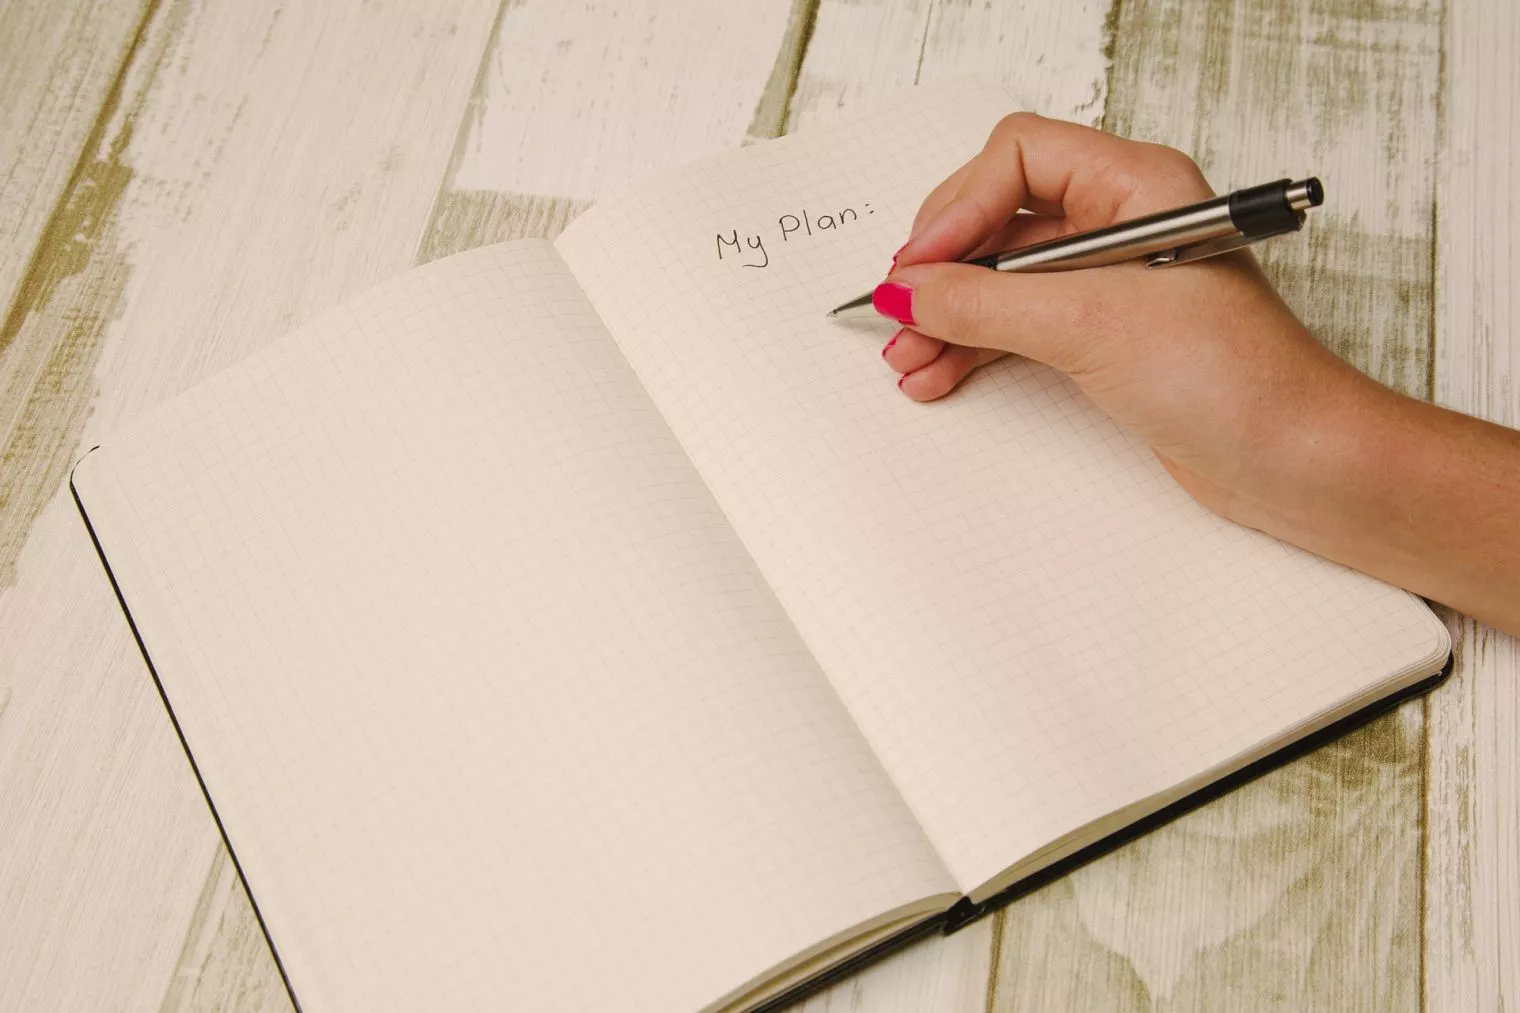 Manfaat Melakukan Journaling Setiap Hari